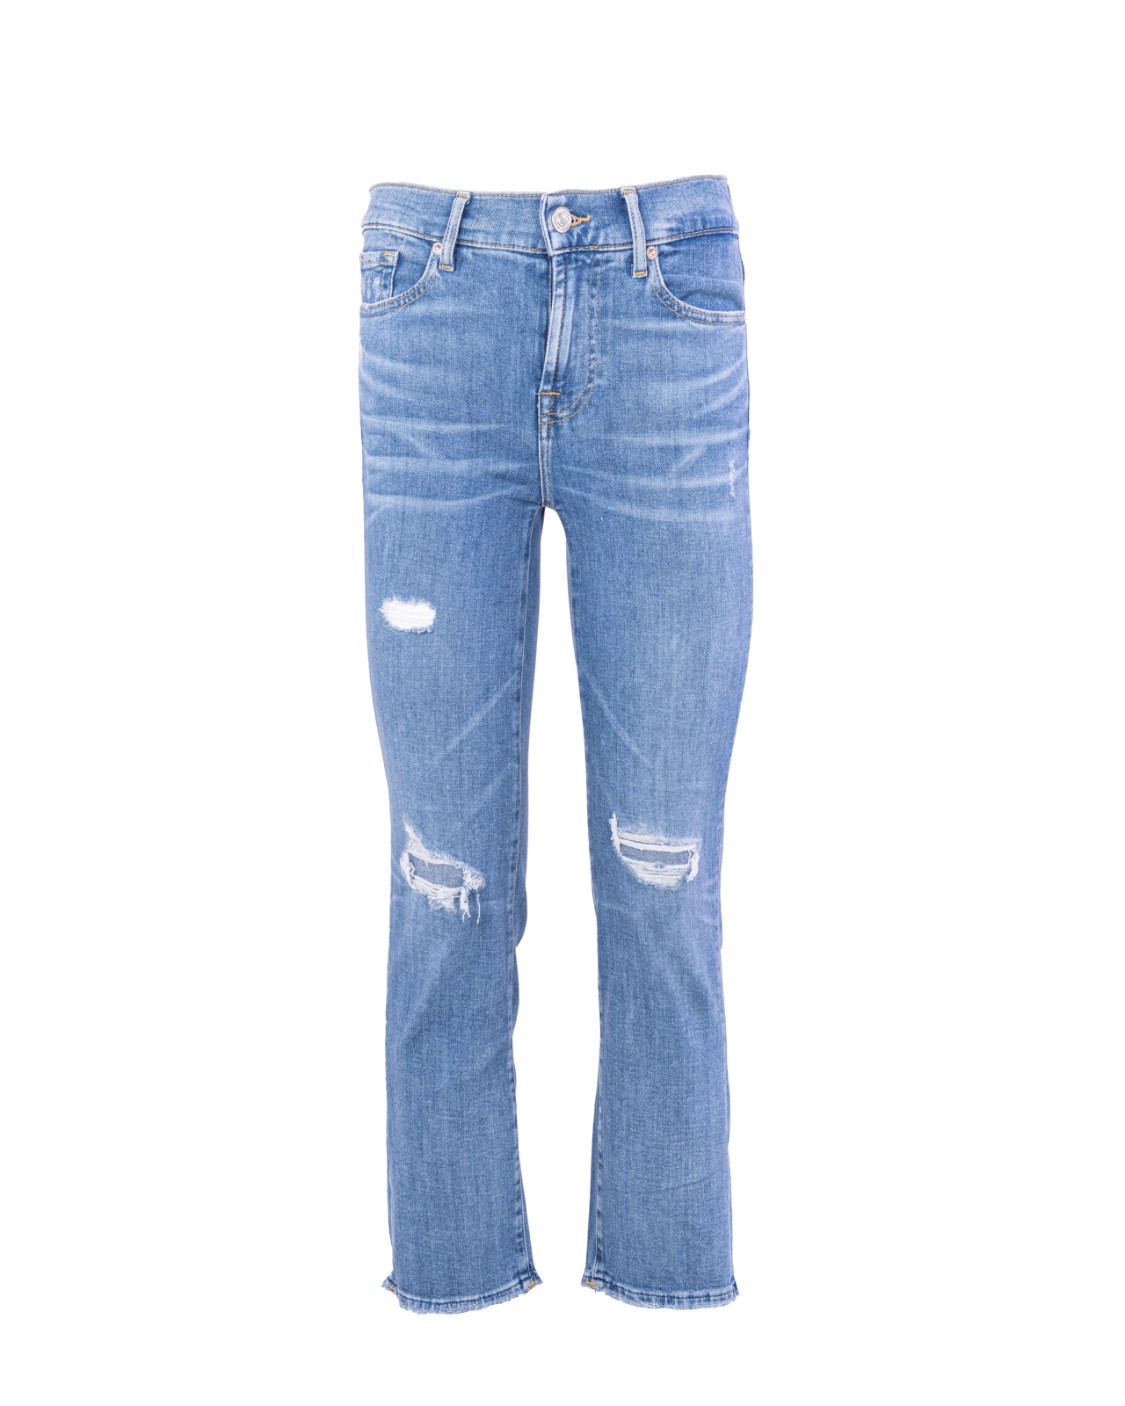 shop SEVEN  Jeans: 7 for all Mankind denim jeans elasticizzato.
Modello: the straight crop.
Lunghezza alla caviglia.
Fondo leggermente scampanato.
Orlo a taglio vivo.
Vita media.
Composizione: 92% cotone 6% elastomultiester 2% elastane.
Made in Tunisia.. JSYXR510SK-LIGHT BLUE number 1134367